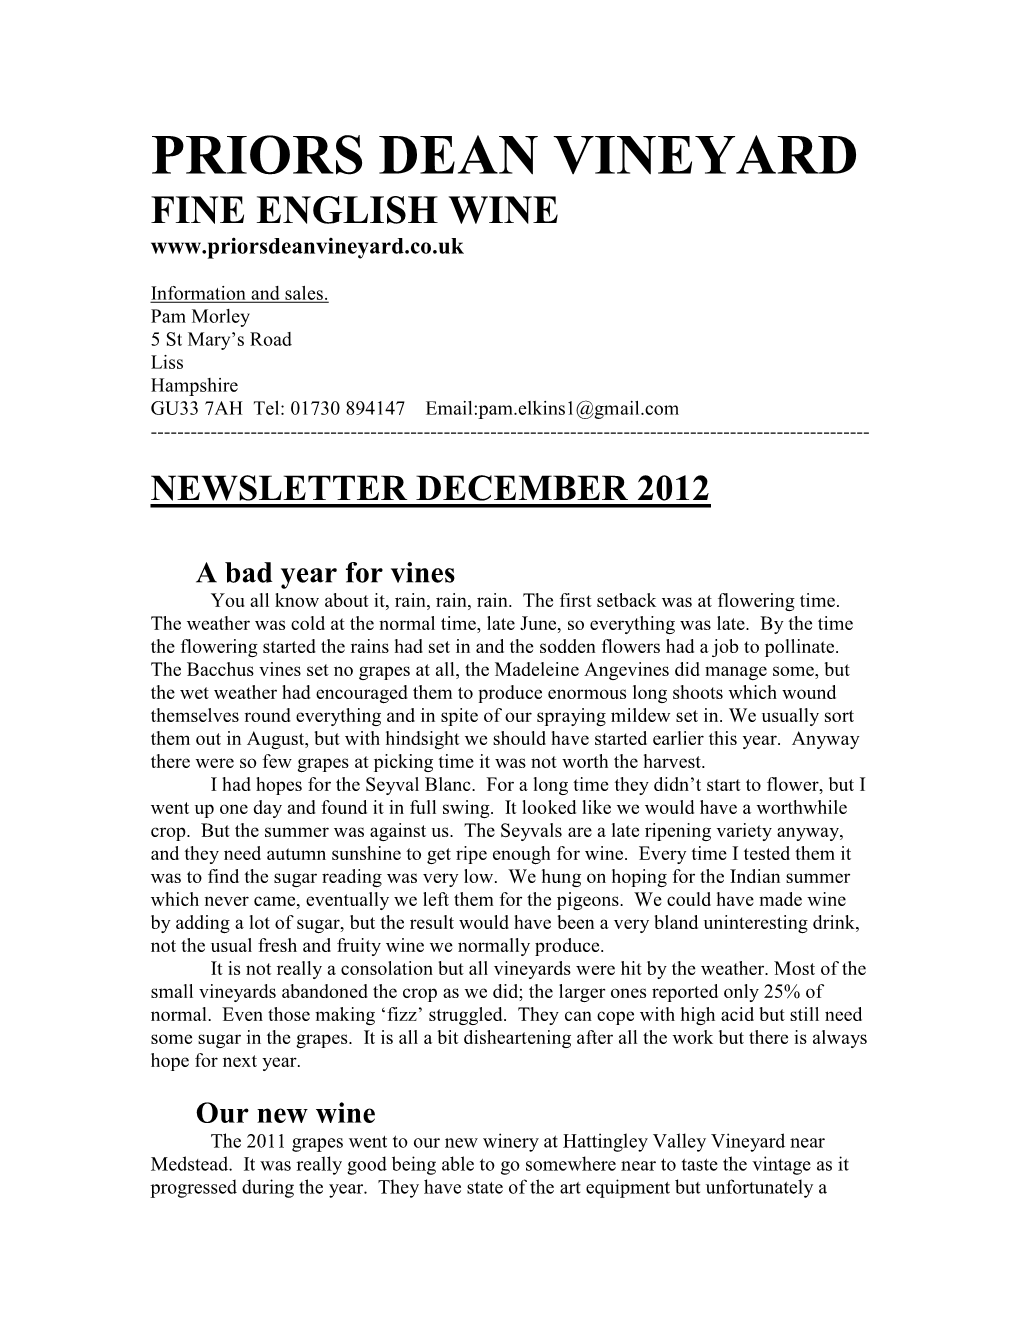 Priors Dean Vineyard Fine English Wine